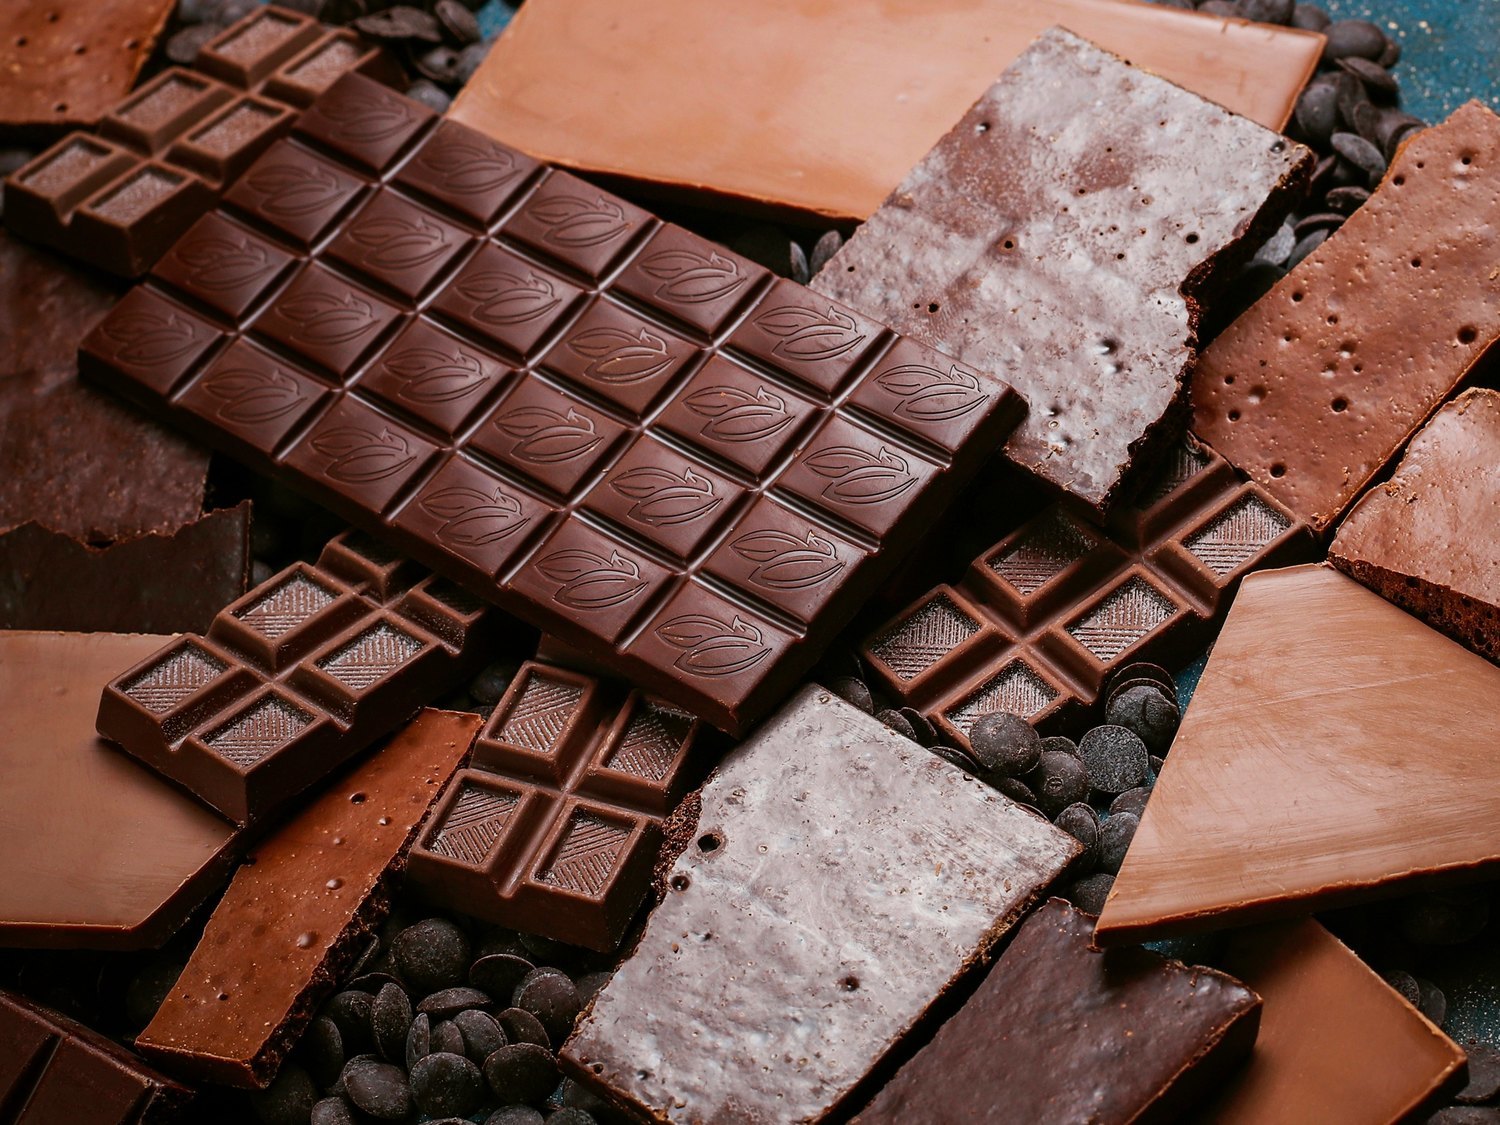 Alerta alimentaria: retiran este popular chocolate de los supermercados y piden evitar su consumo